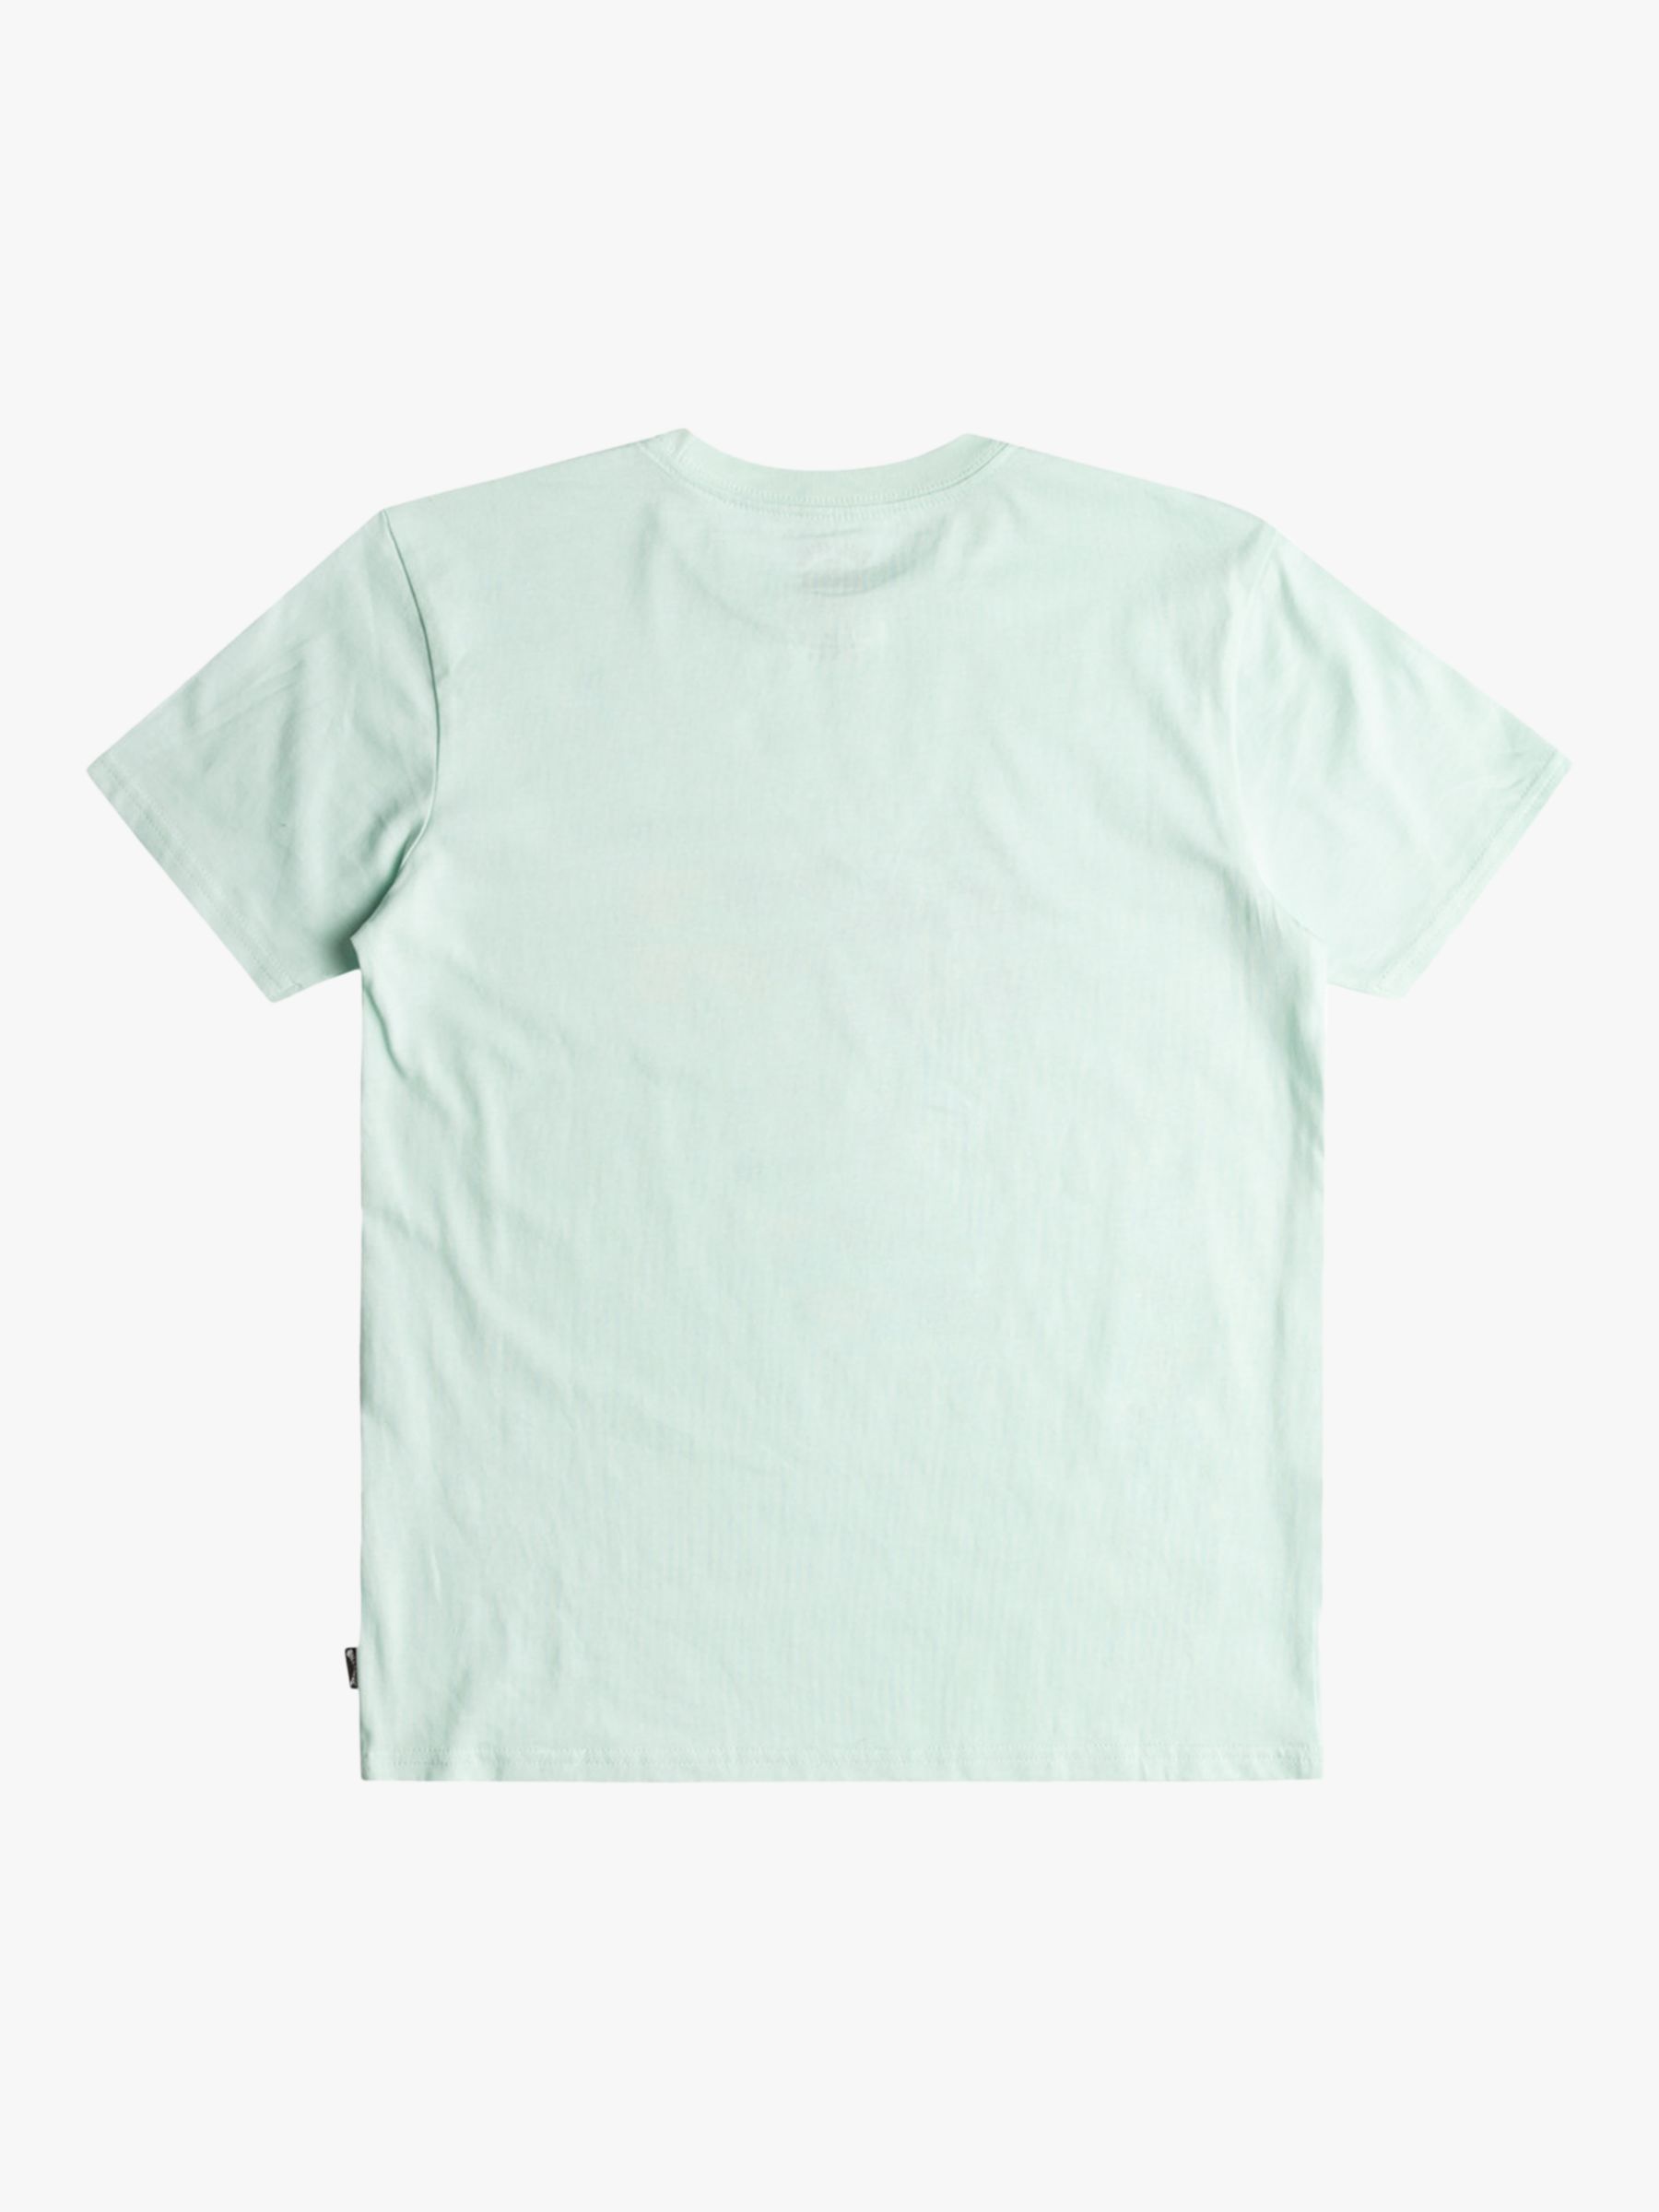 Billabong Kids' Wave Short Sleeve T-Shirt, Seaglass, 14 years